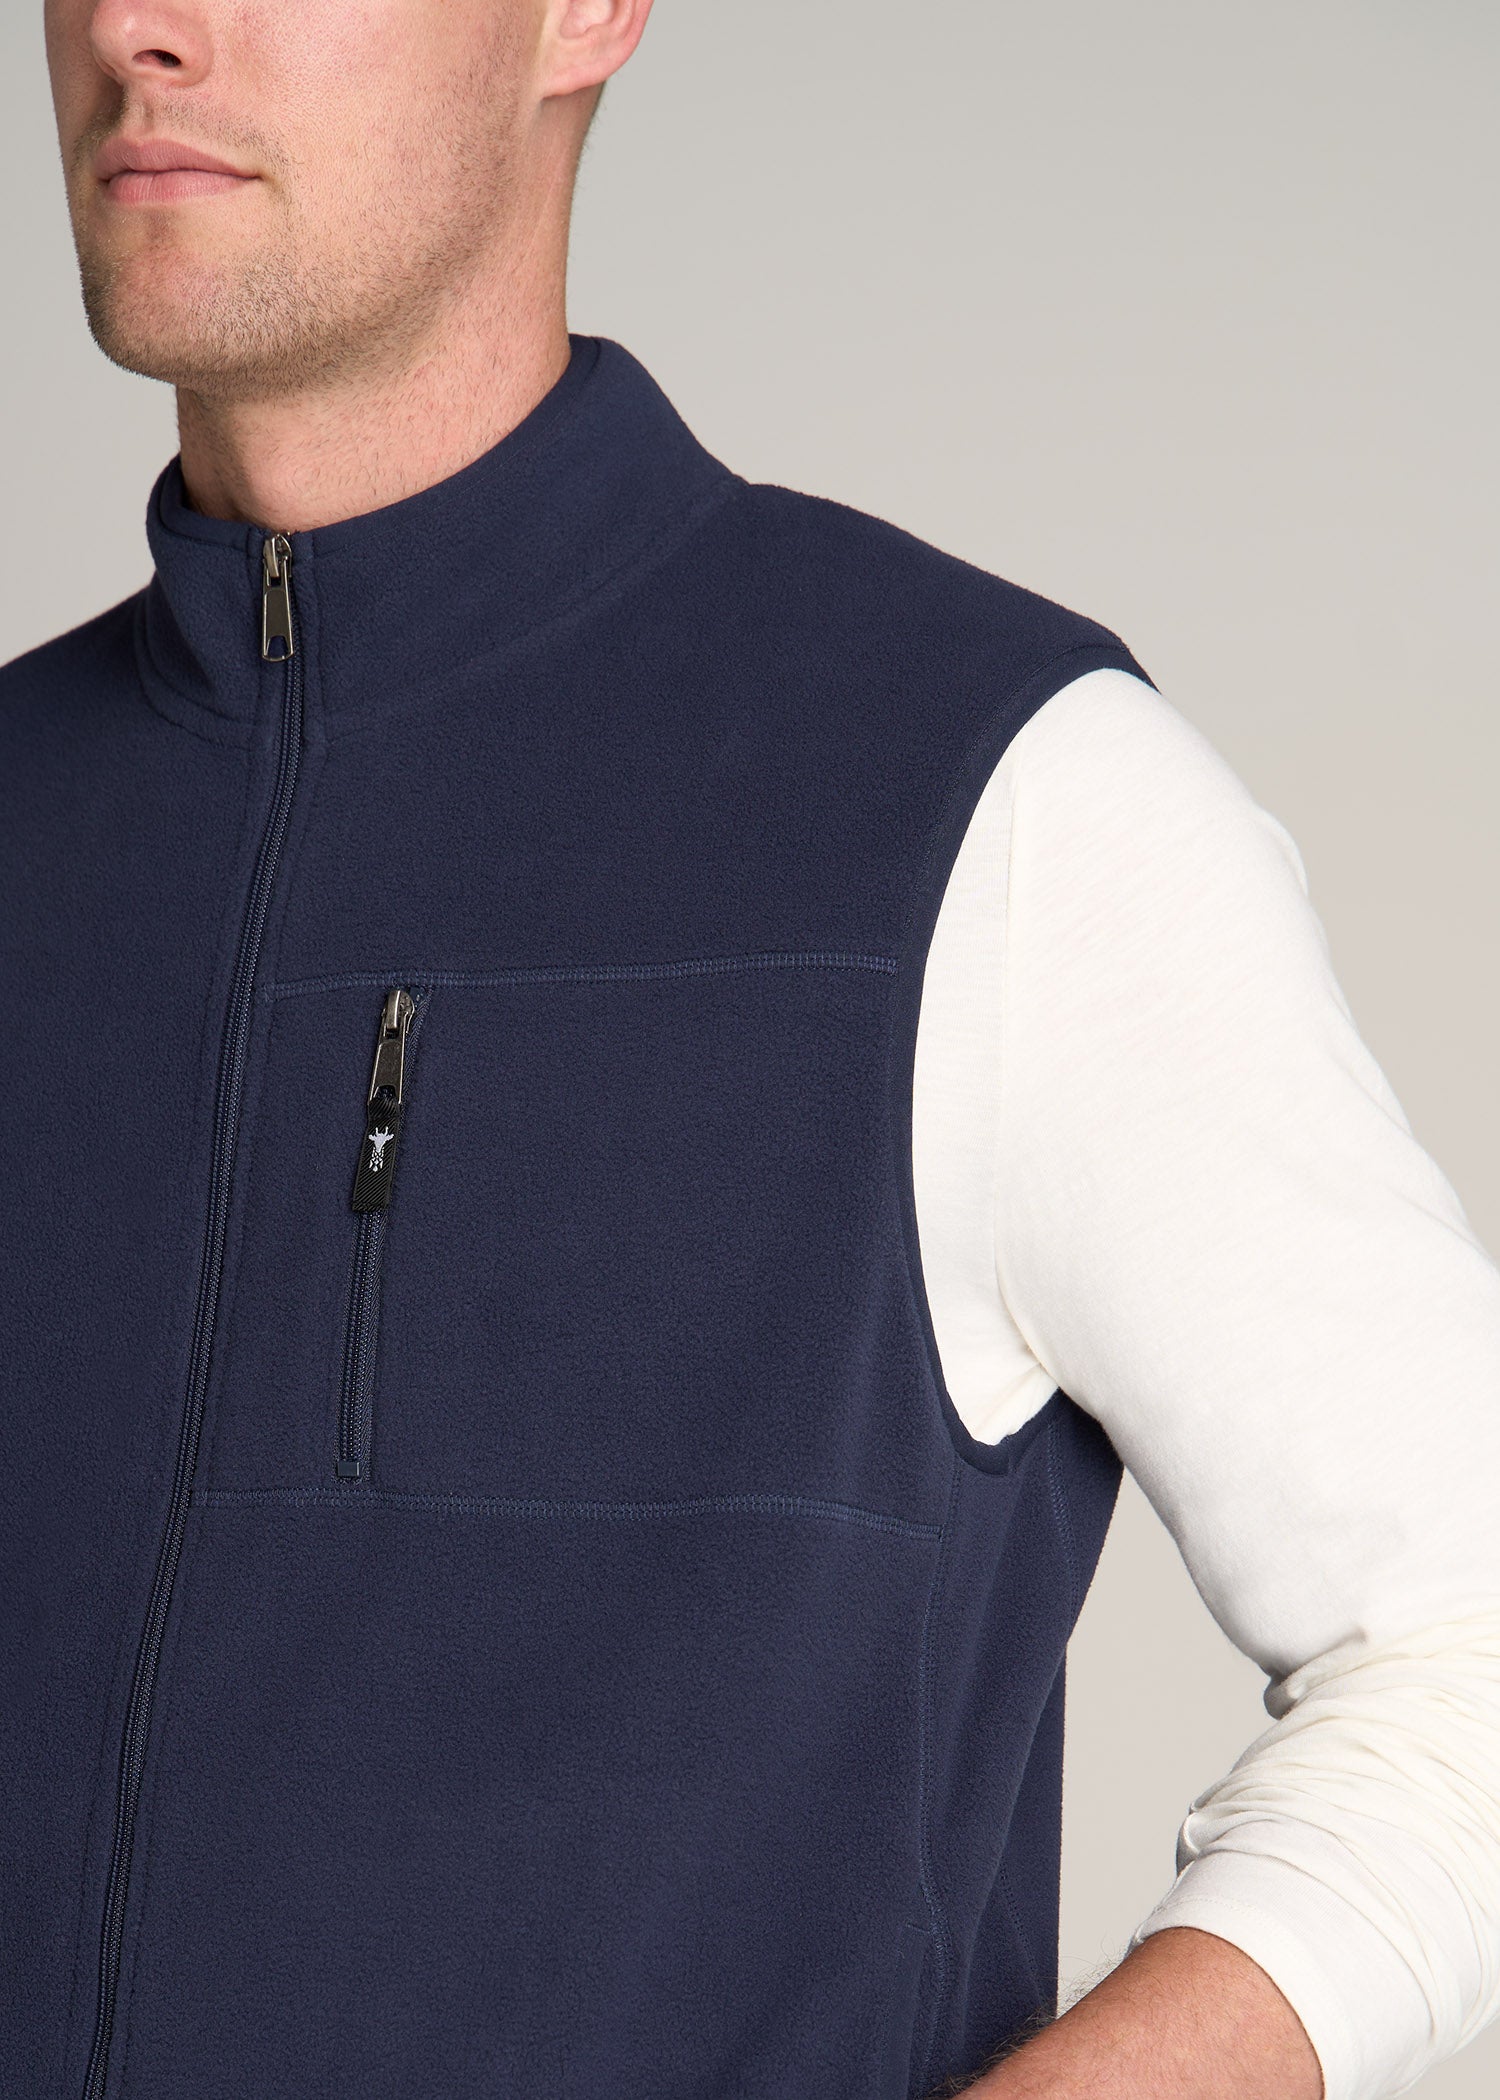 Essentials Men's Full-Zip Polar Fleece Vest, Blue Camo, X